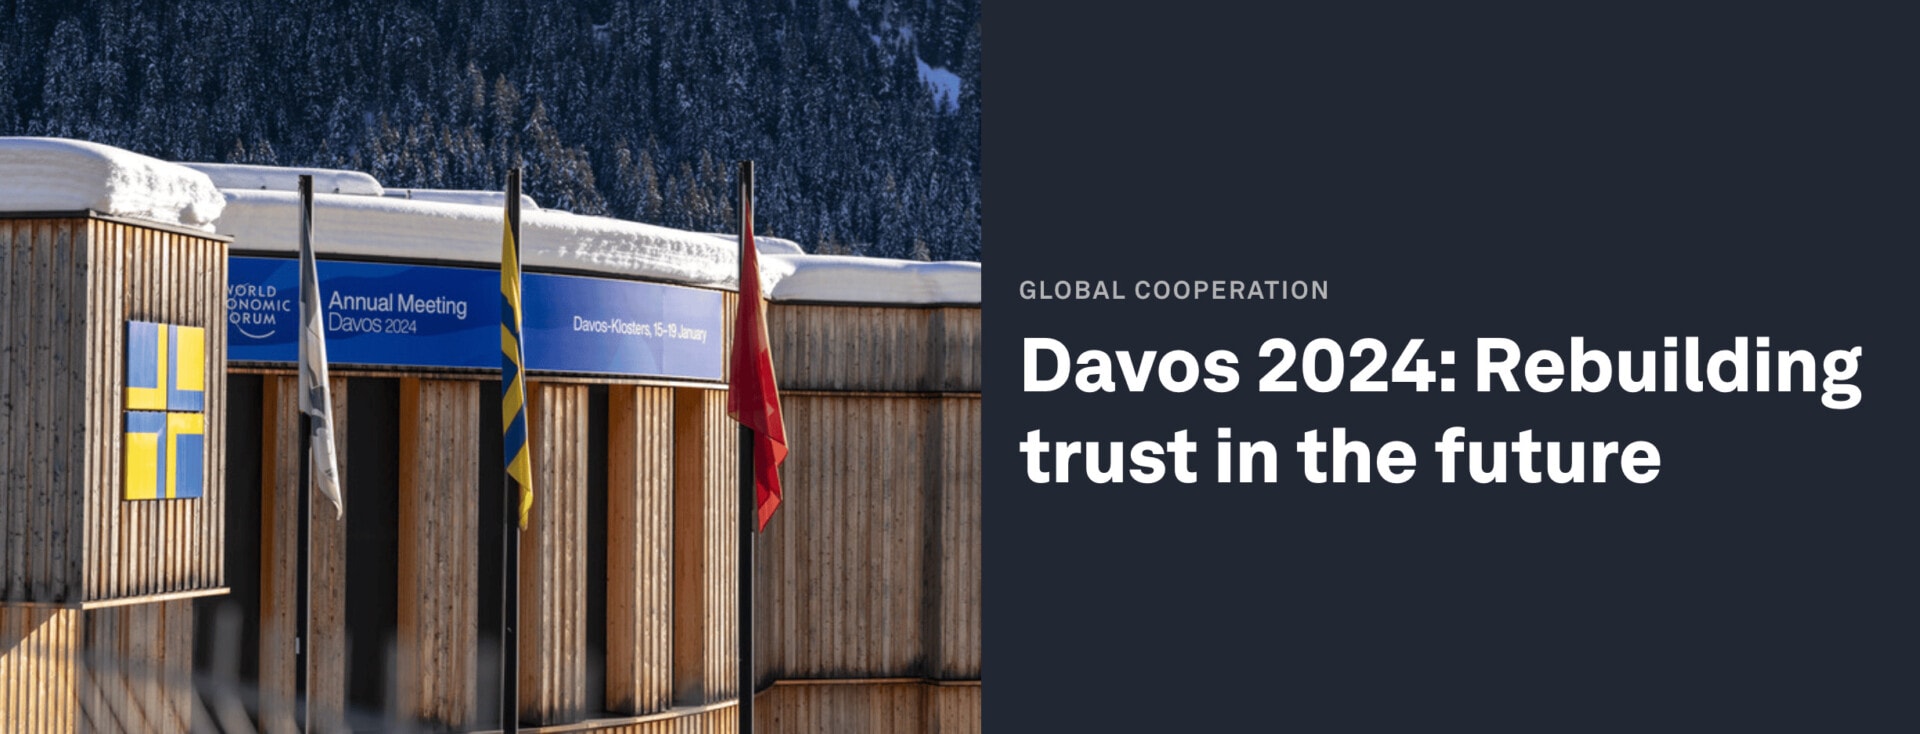 Le Forum économique mondial (WEF24) ouvre ses portes à Davos